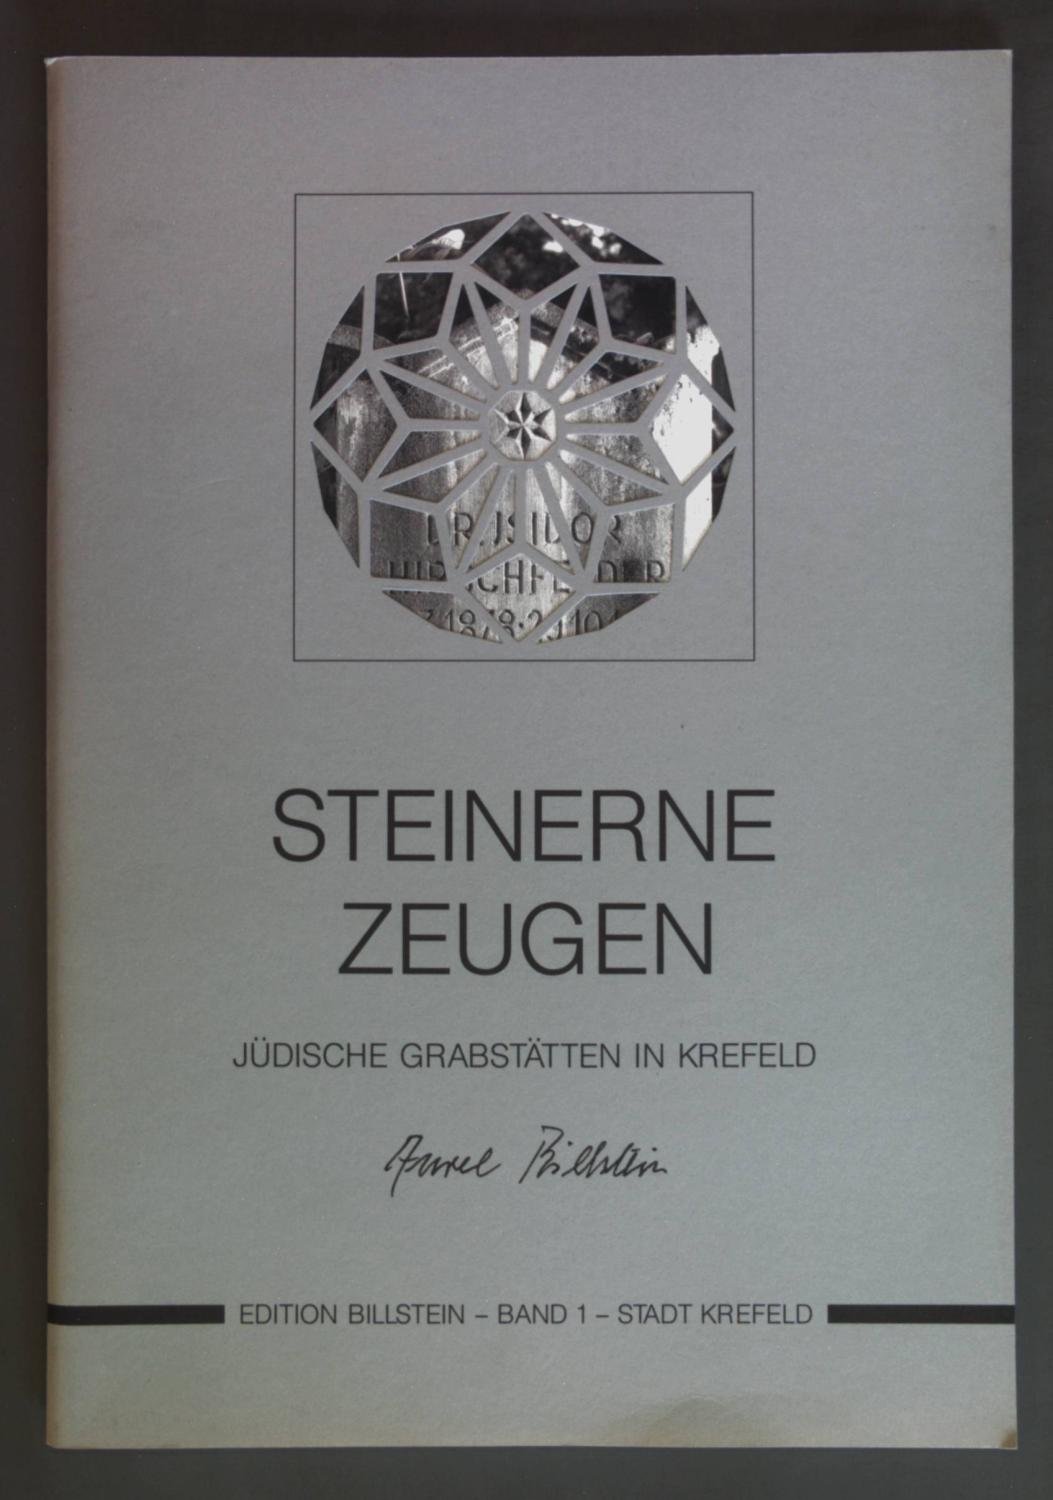 Steinerne Zeugen: Judische Grabstatten in Krefeld (Edition Billstein)